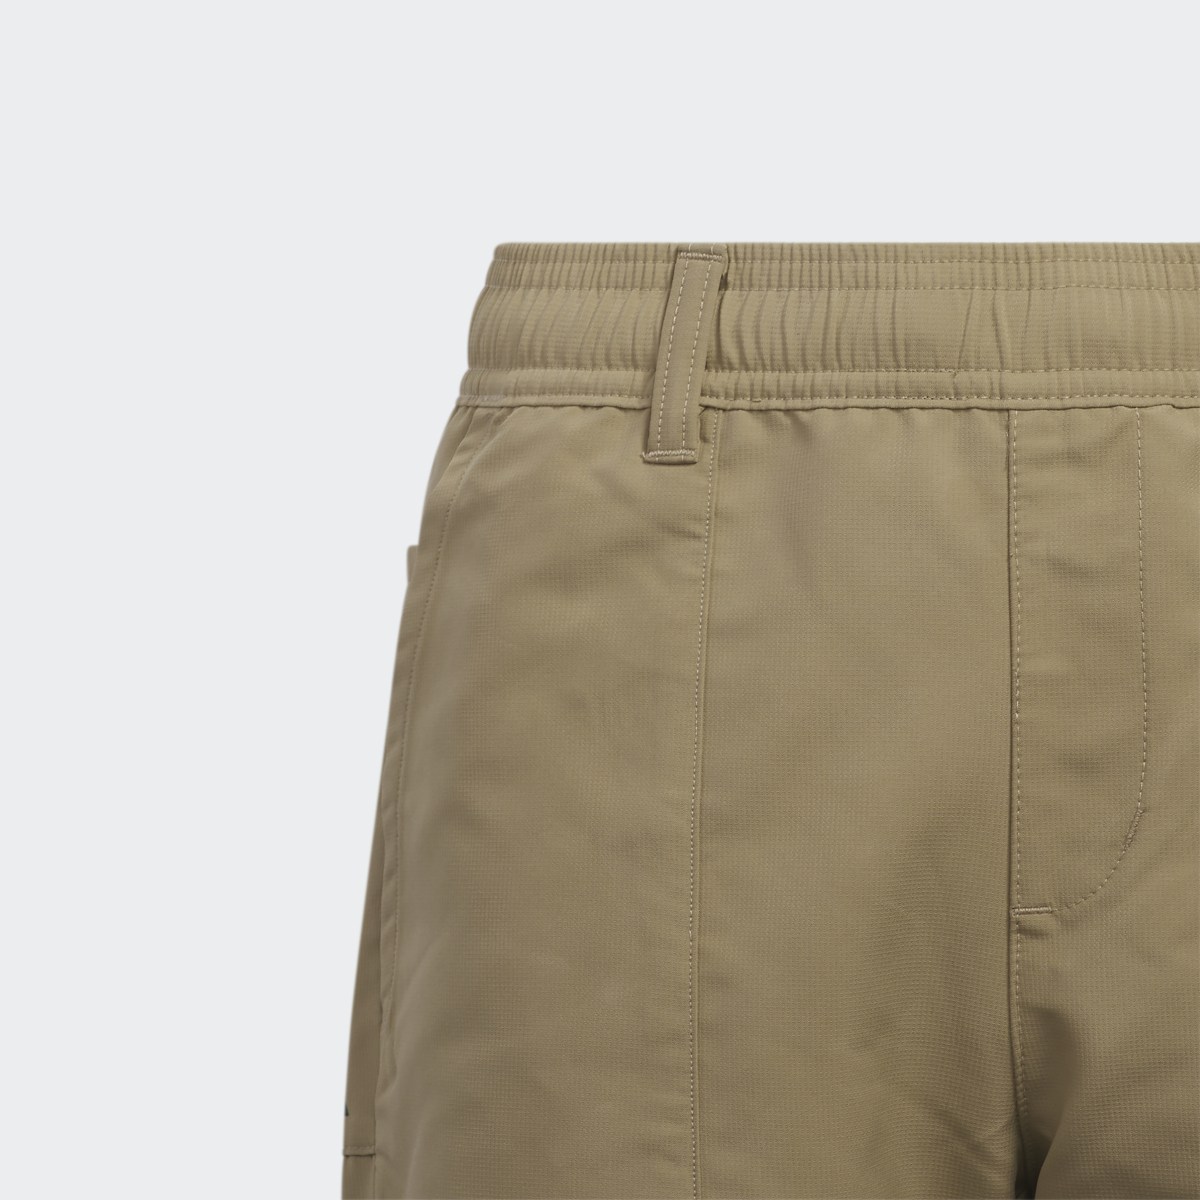 Adidas Versatile Pull-on Pants. 4